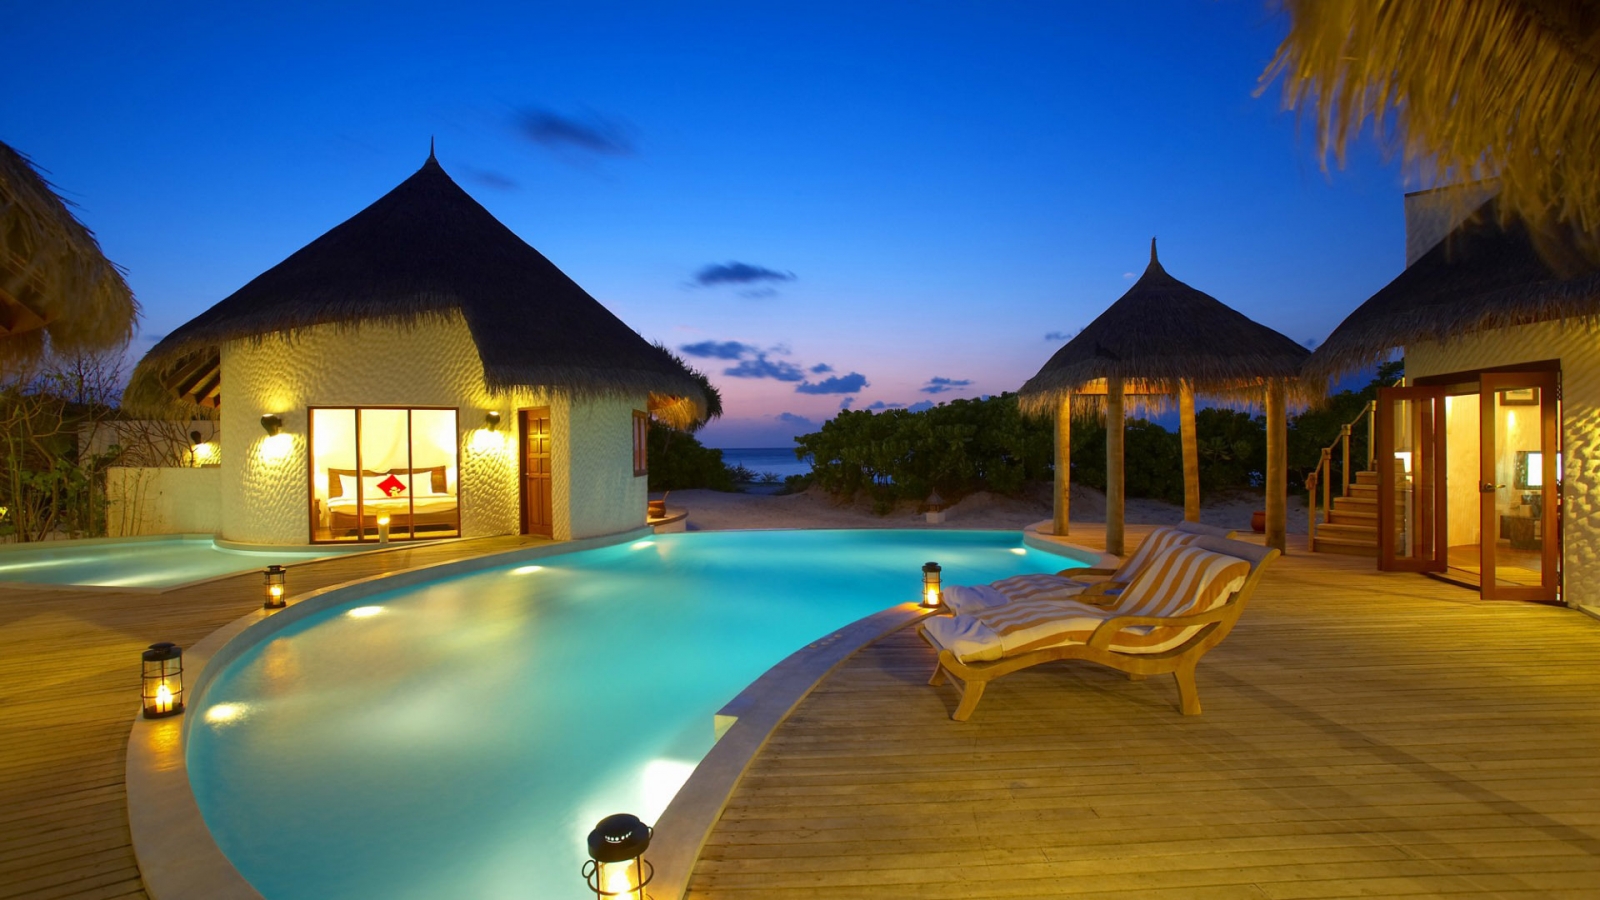 Maldives 5 Star Resort for 1600 x 900 HDTV resolution